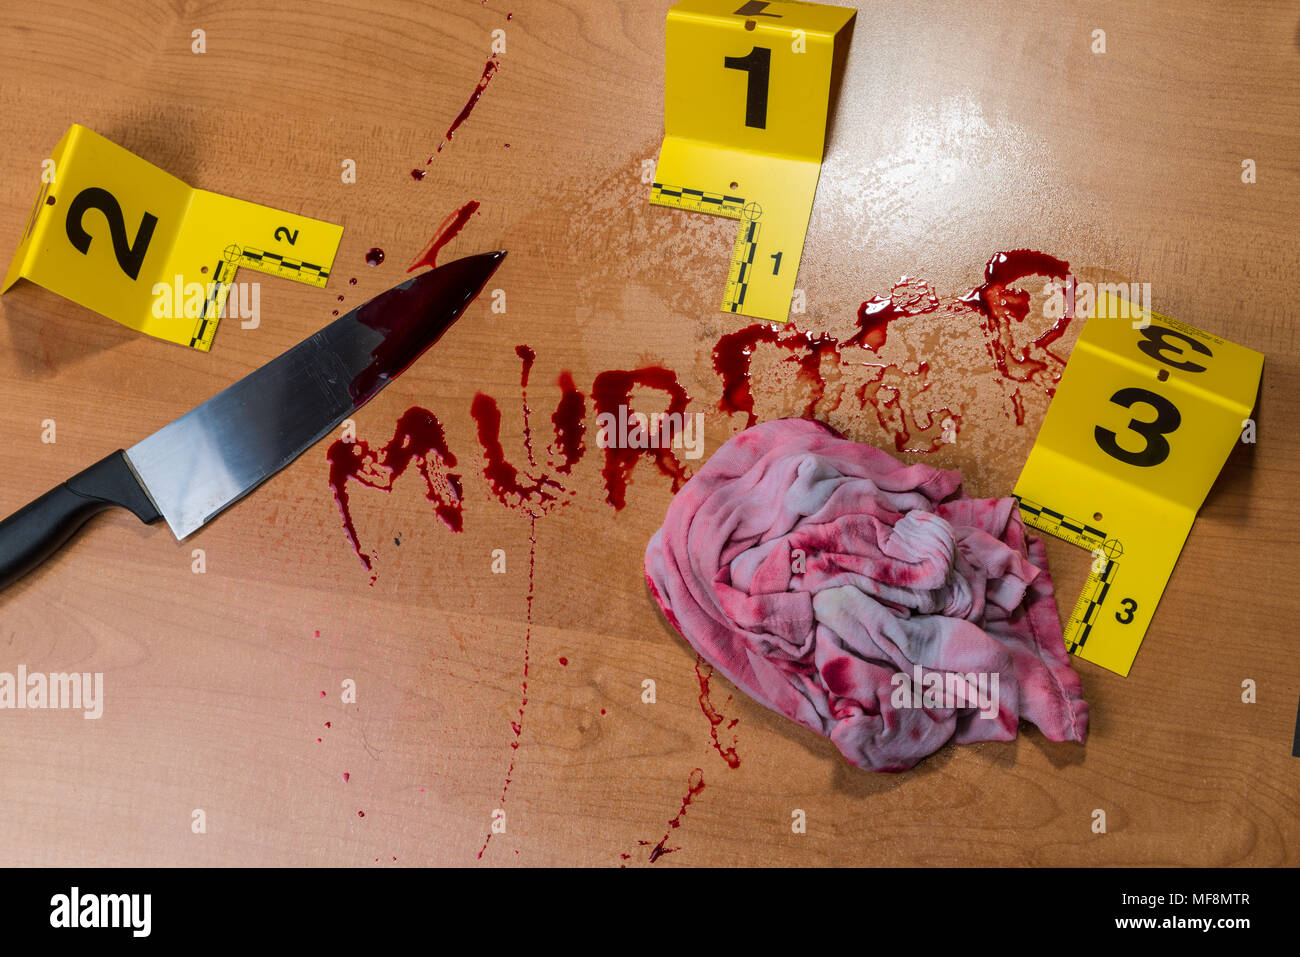 Das Wort "Mord" im Blut auf einem Holz Oberfläche neben ein blutiges Messer und eine blutige Lappen, die alle durch die Beweise am Tatort Markierungen gekennzeichnet geschrieben. Stockfoto